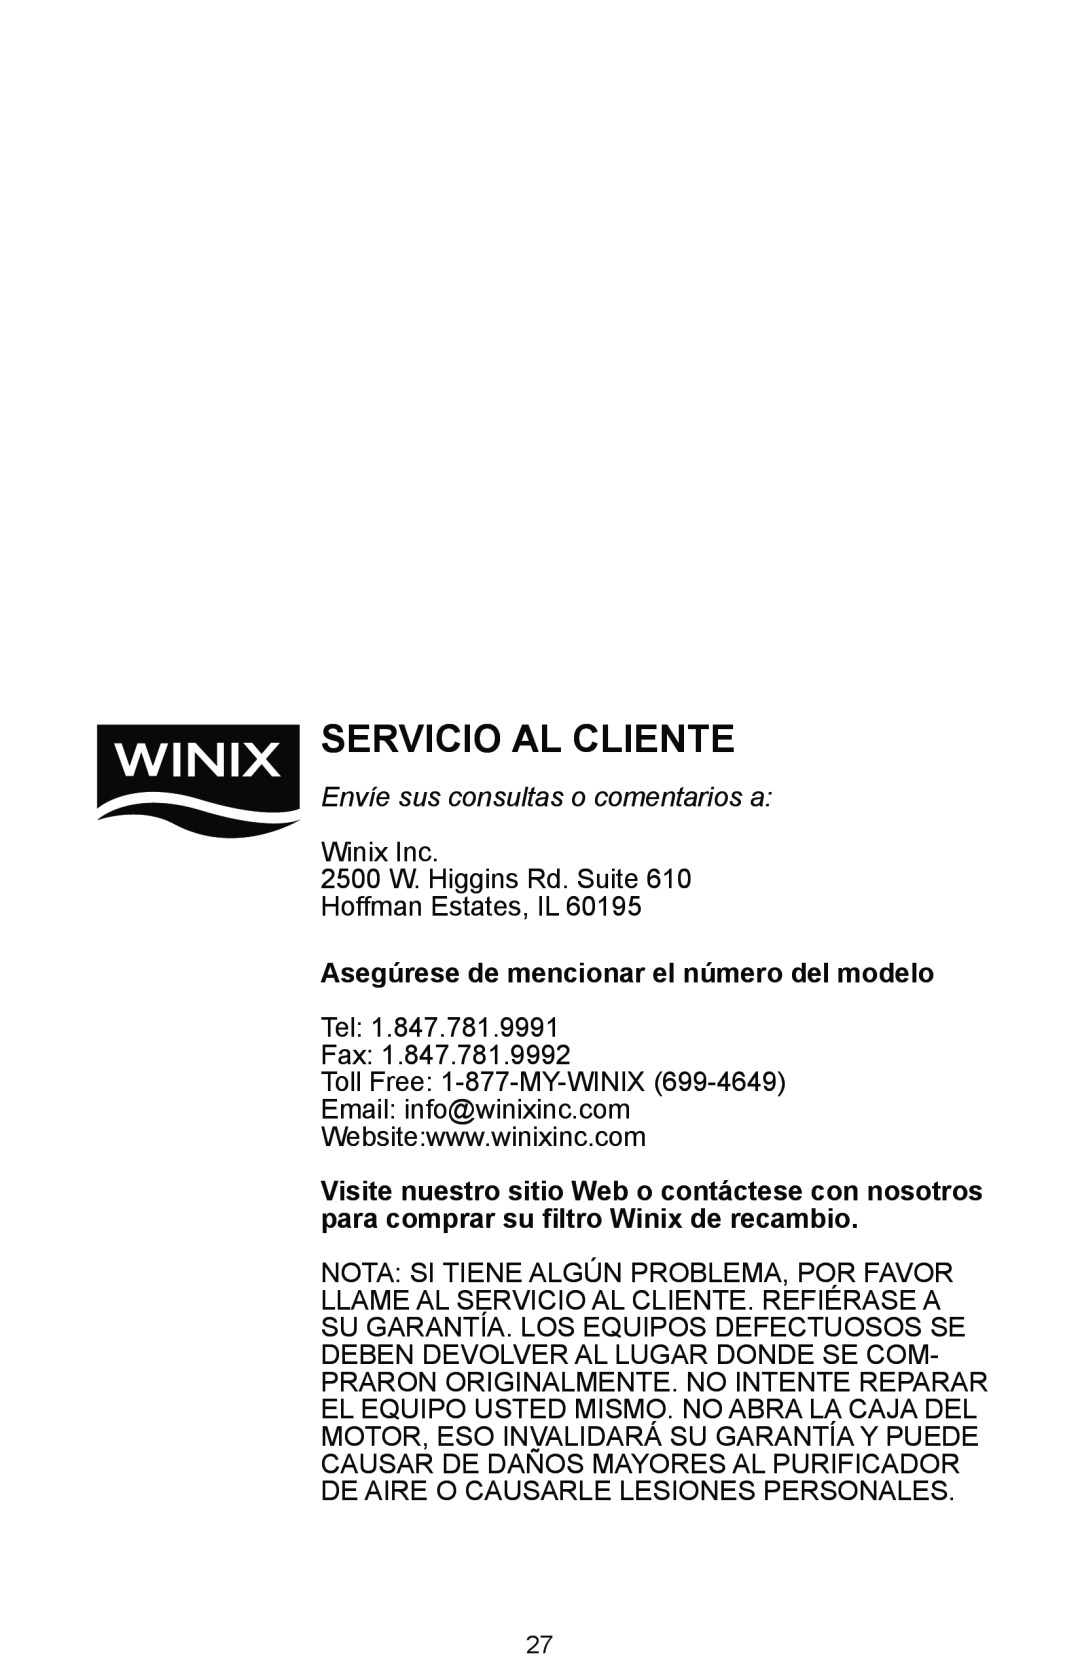 Winix Air Cleaner Asegúrese de mencionar el número del modelo, Servicio Al Cliente, Envíe sus consultas o comentarios a 